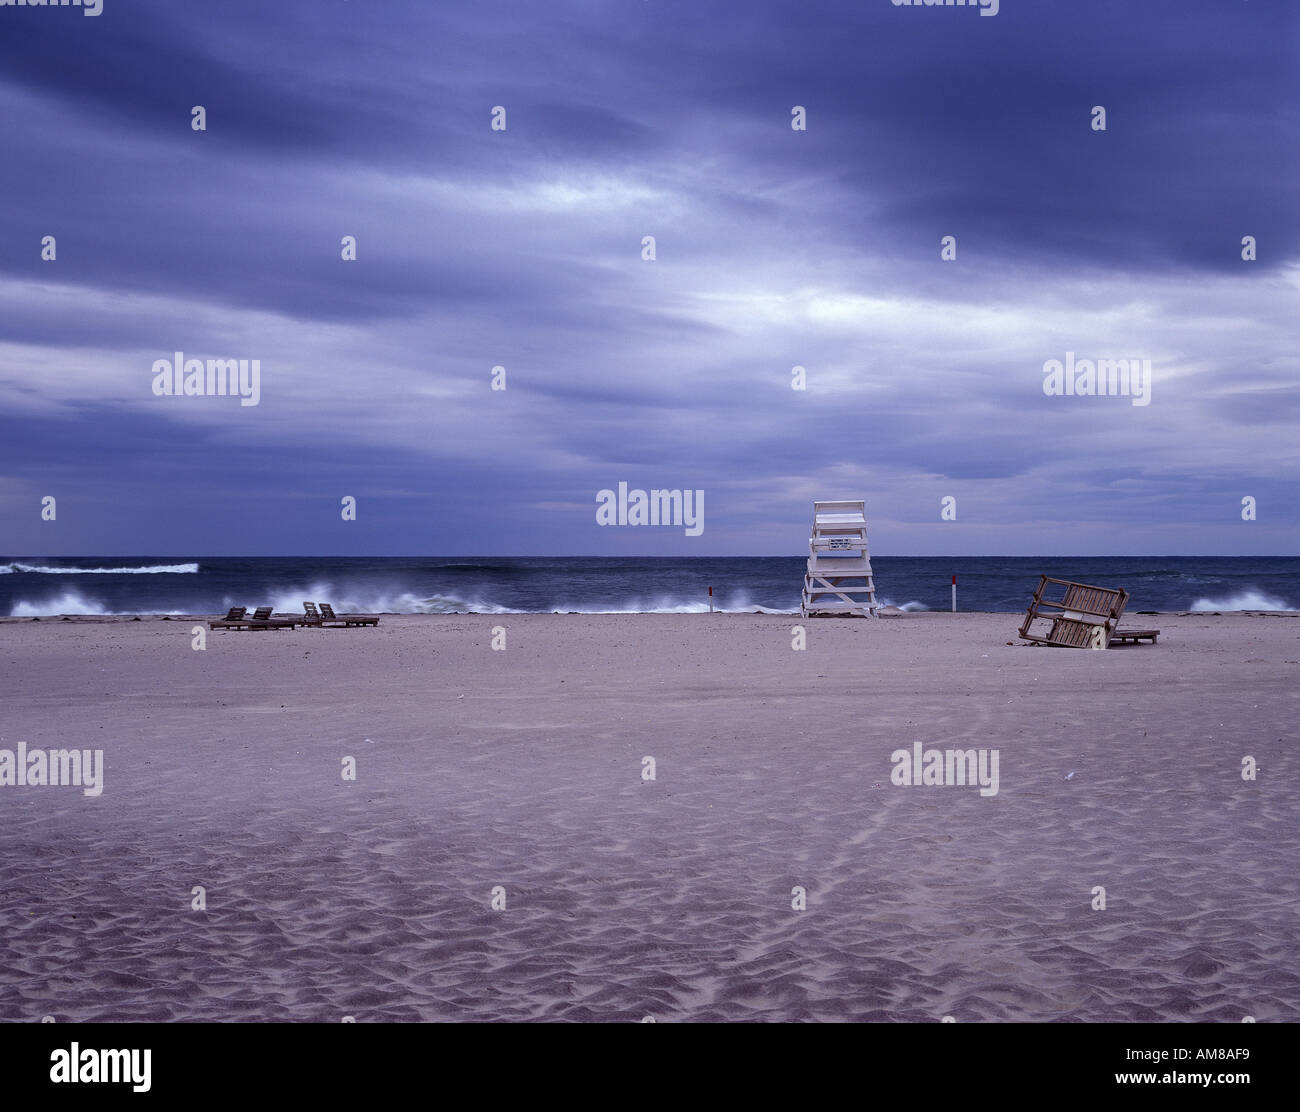 Playa vacía durante la tormenta, Playa de los Hamptons, en Long Island, Nueva York, EE.UU. Foto de stock